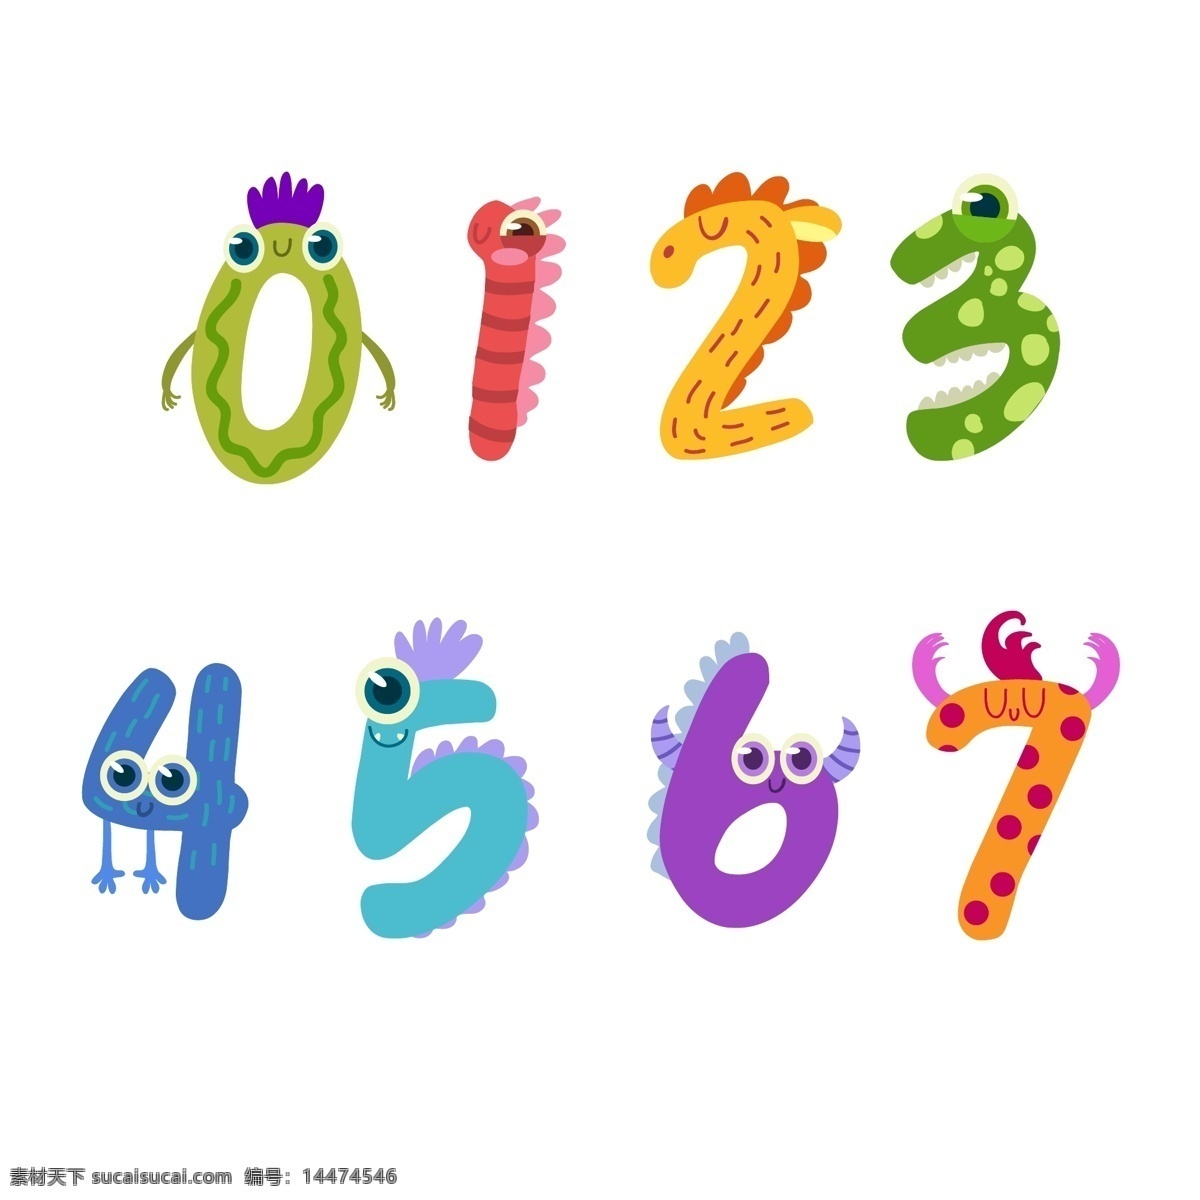 可爱 创意 卡通 数字 龙 矢量素材 彩色 蛇 虫子